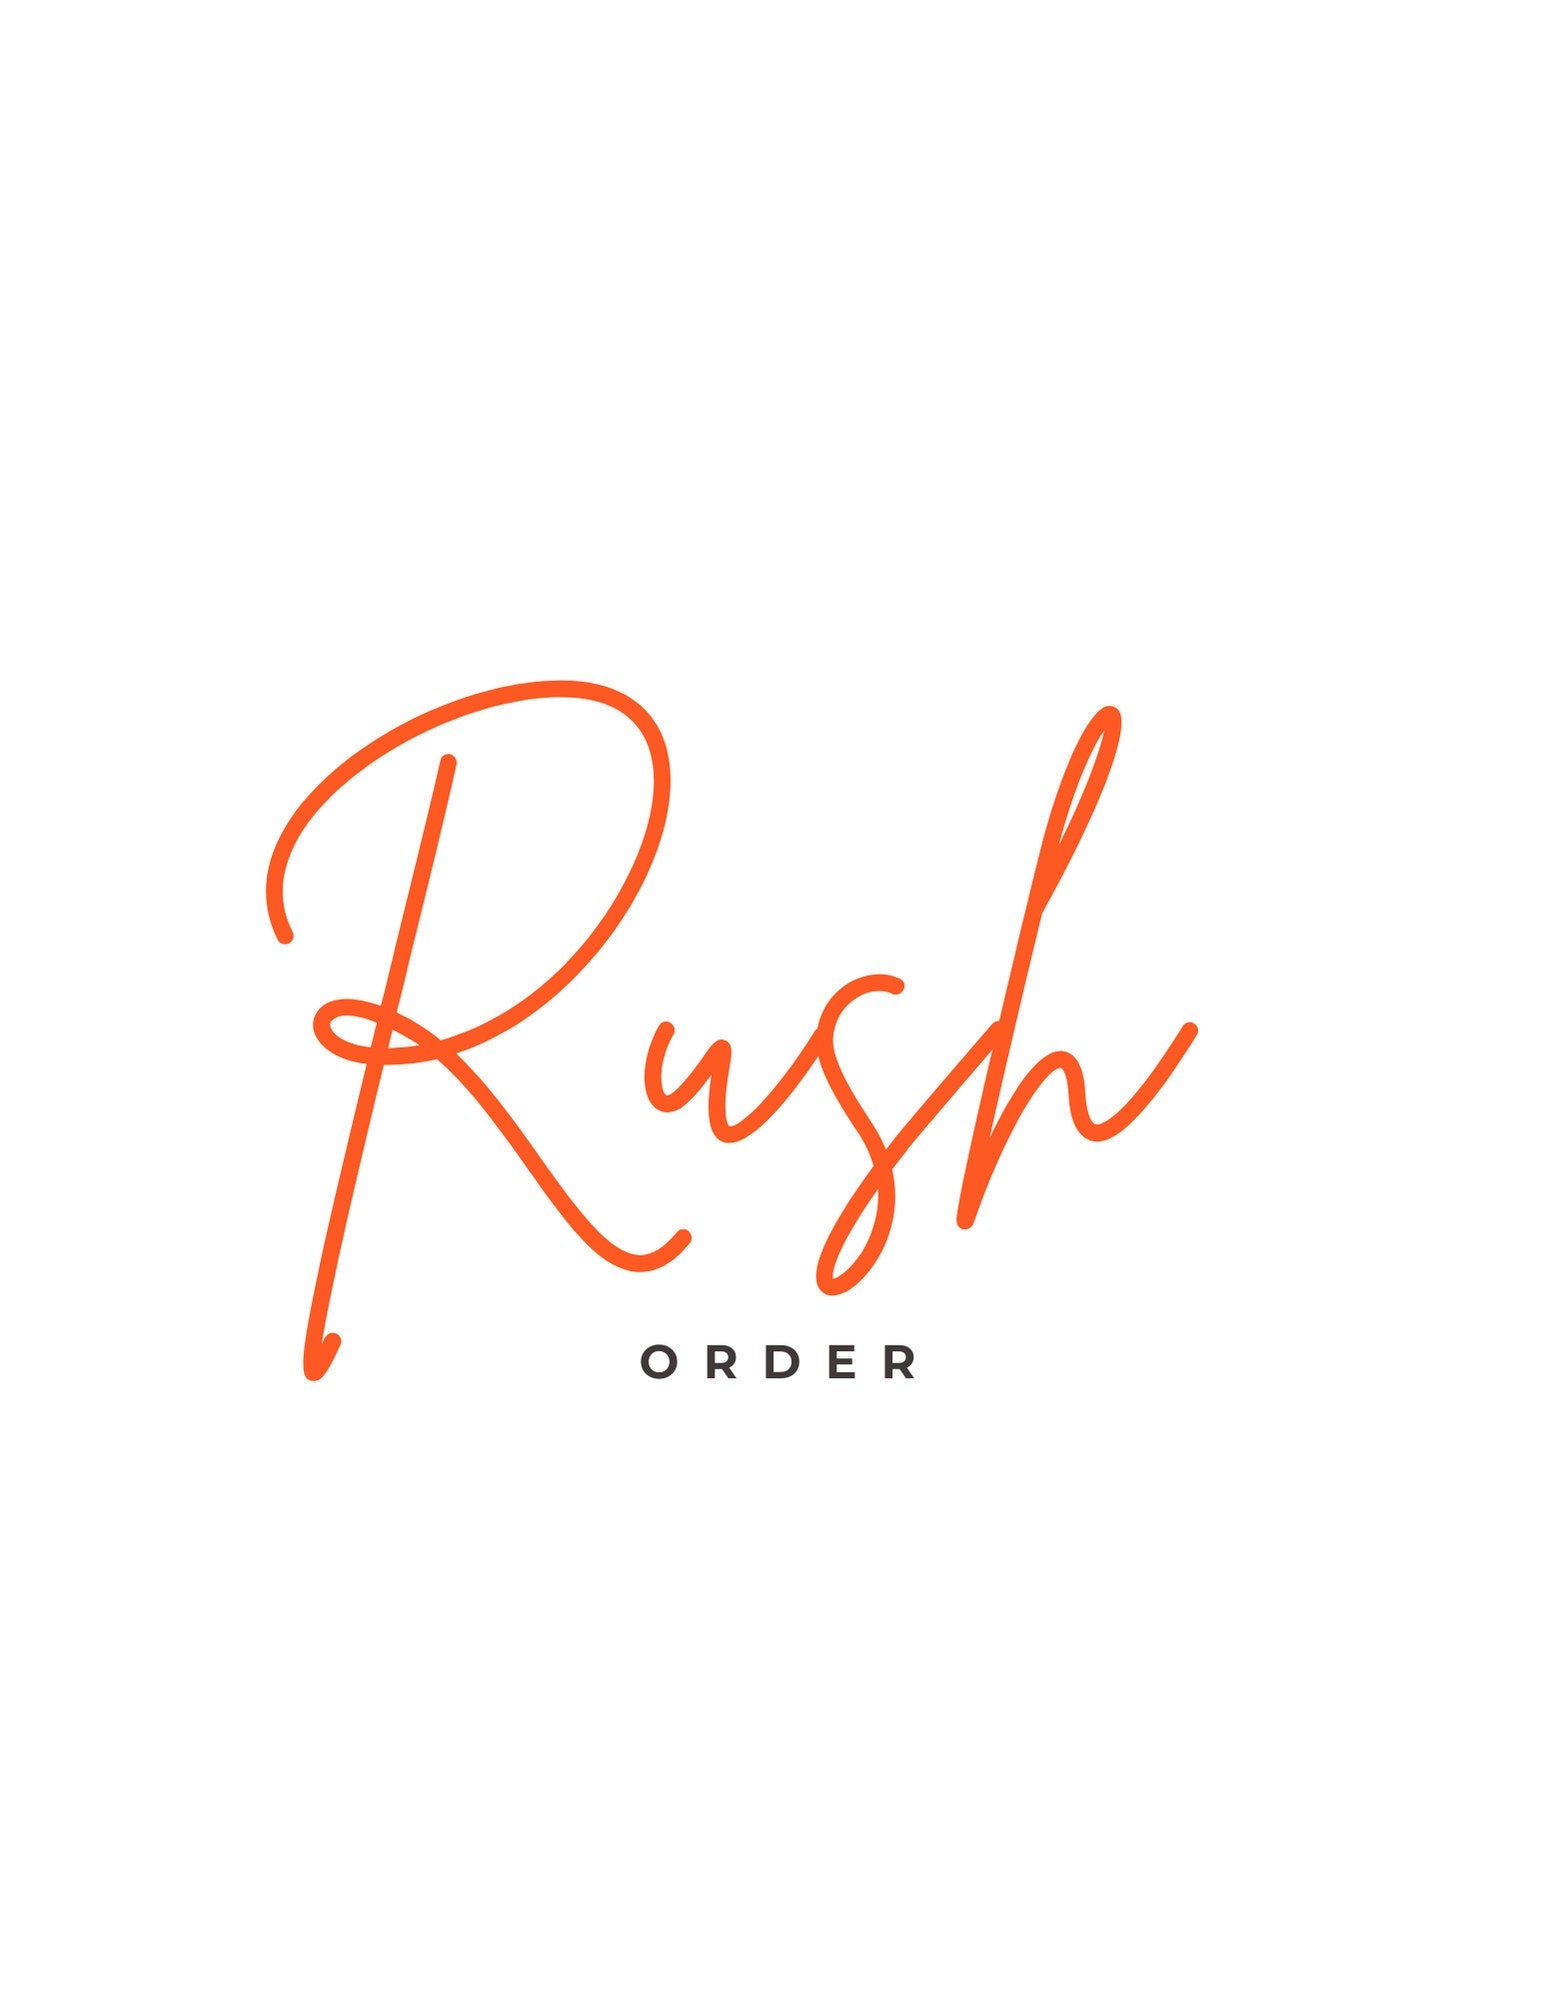 Rush order for video invite